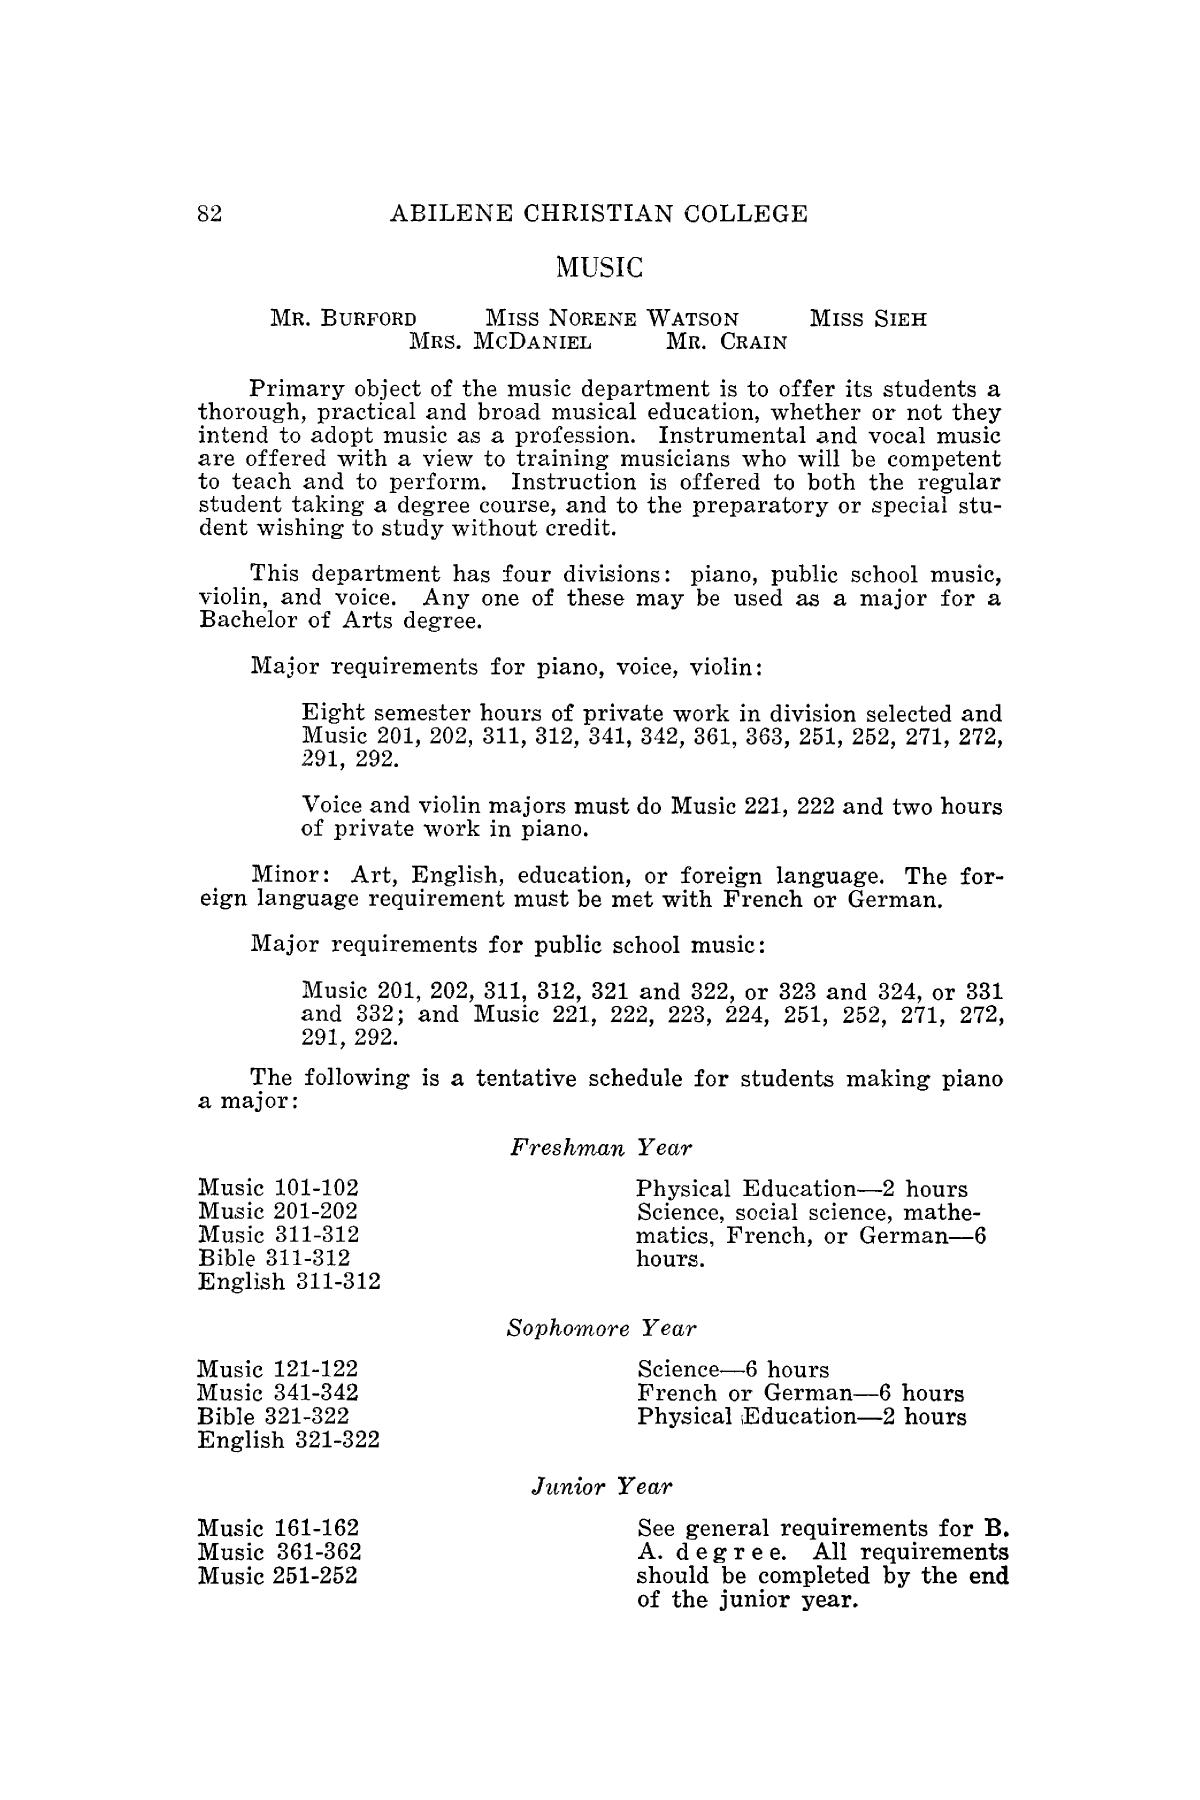 Catalog of Abilene Christian College, 1939-1940
                                                
                                                    82
                                                